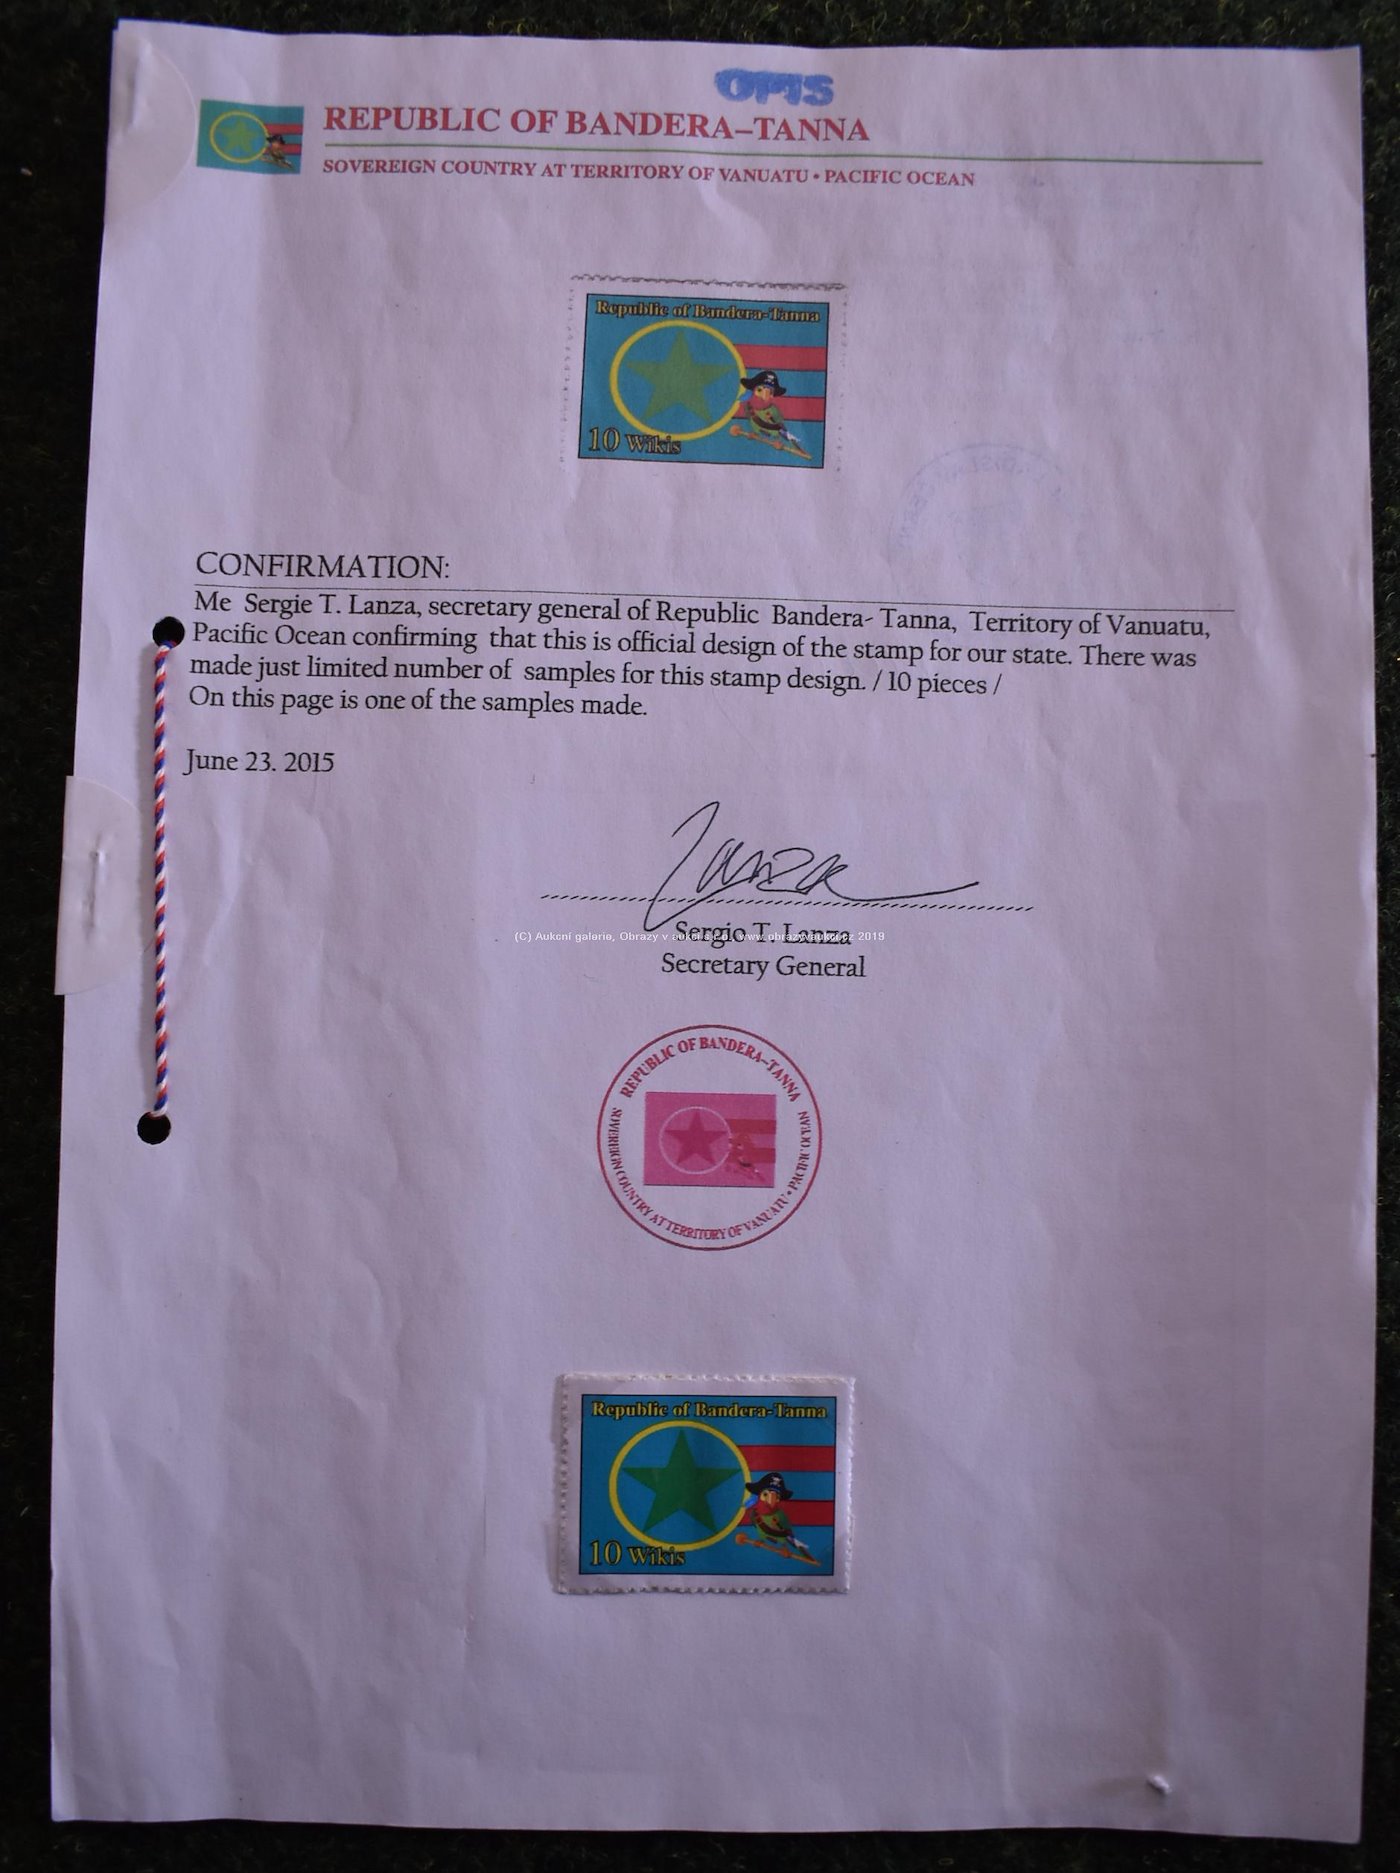 . - Poštovní známka republiky Bandera - Tanna